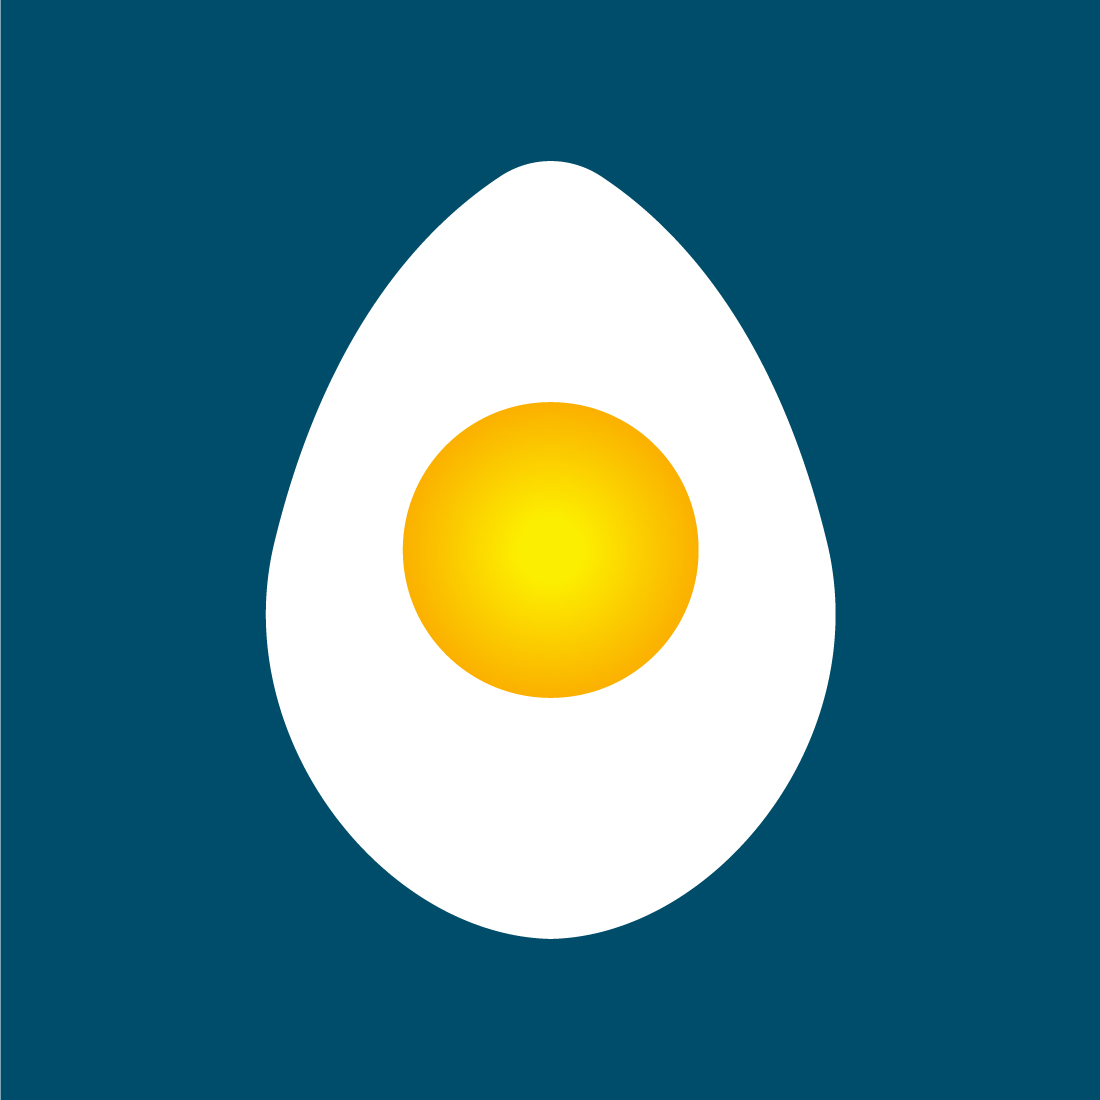 Creative Gradient Fresh Egg Logo design, Vector design concept preview image.